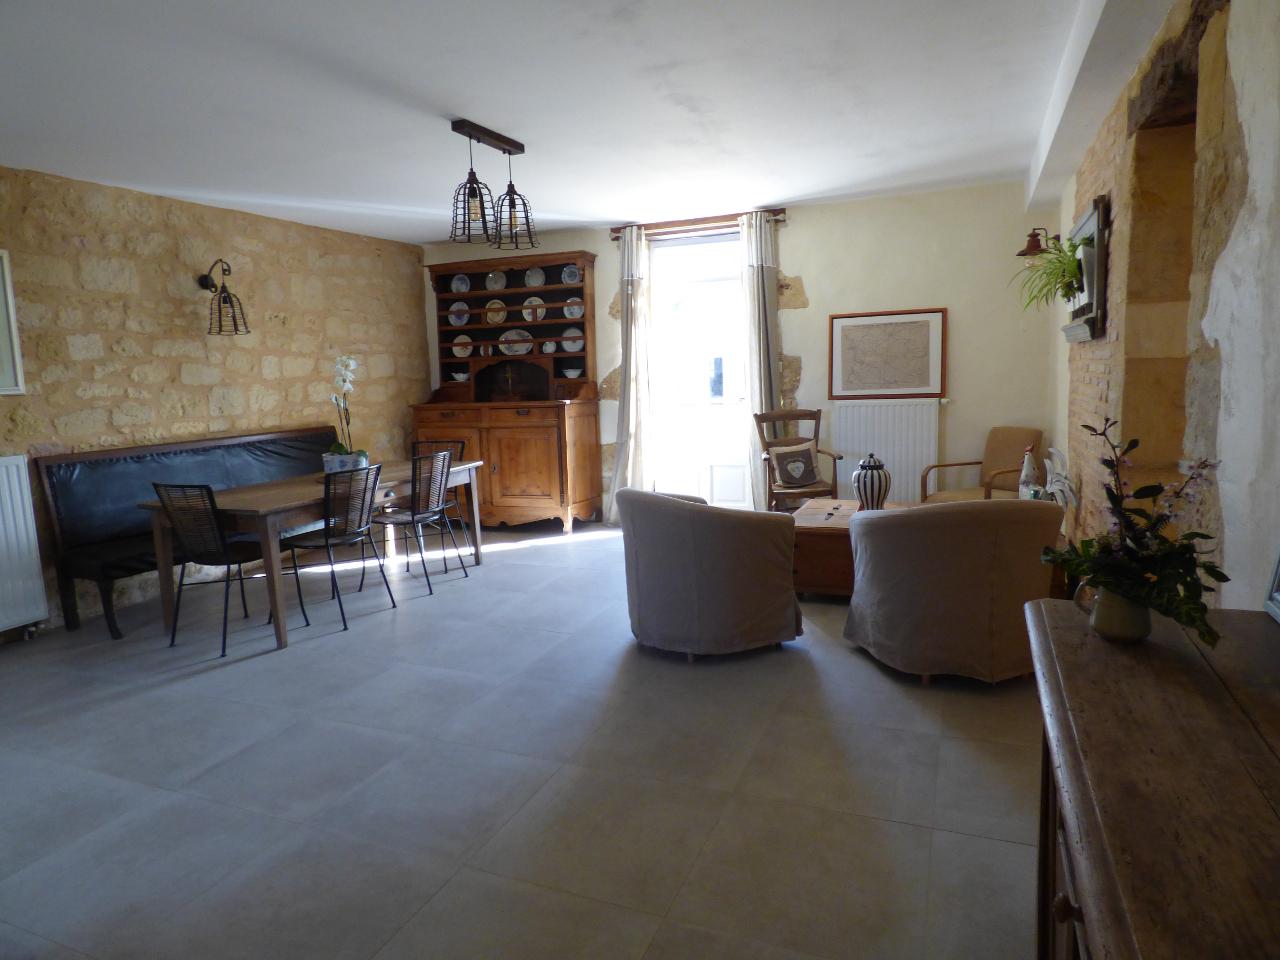 Hôte GreenGo: BRITAVIT Chambres et table d'Hôtes en Périgord - Image 71